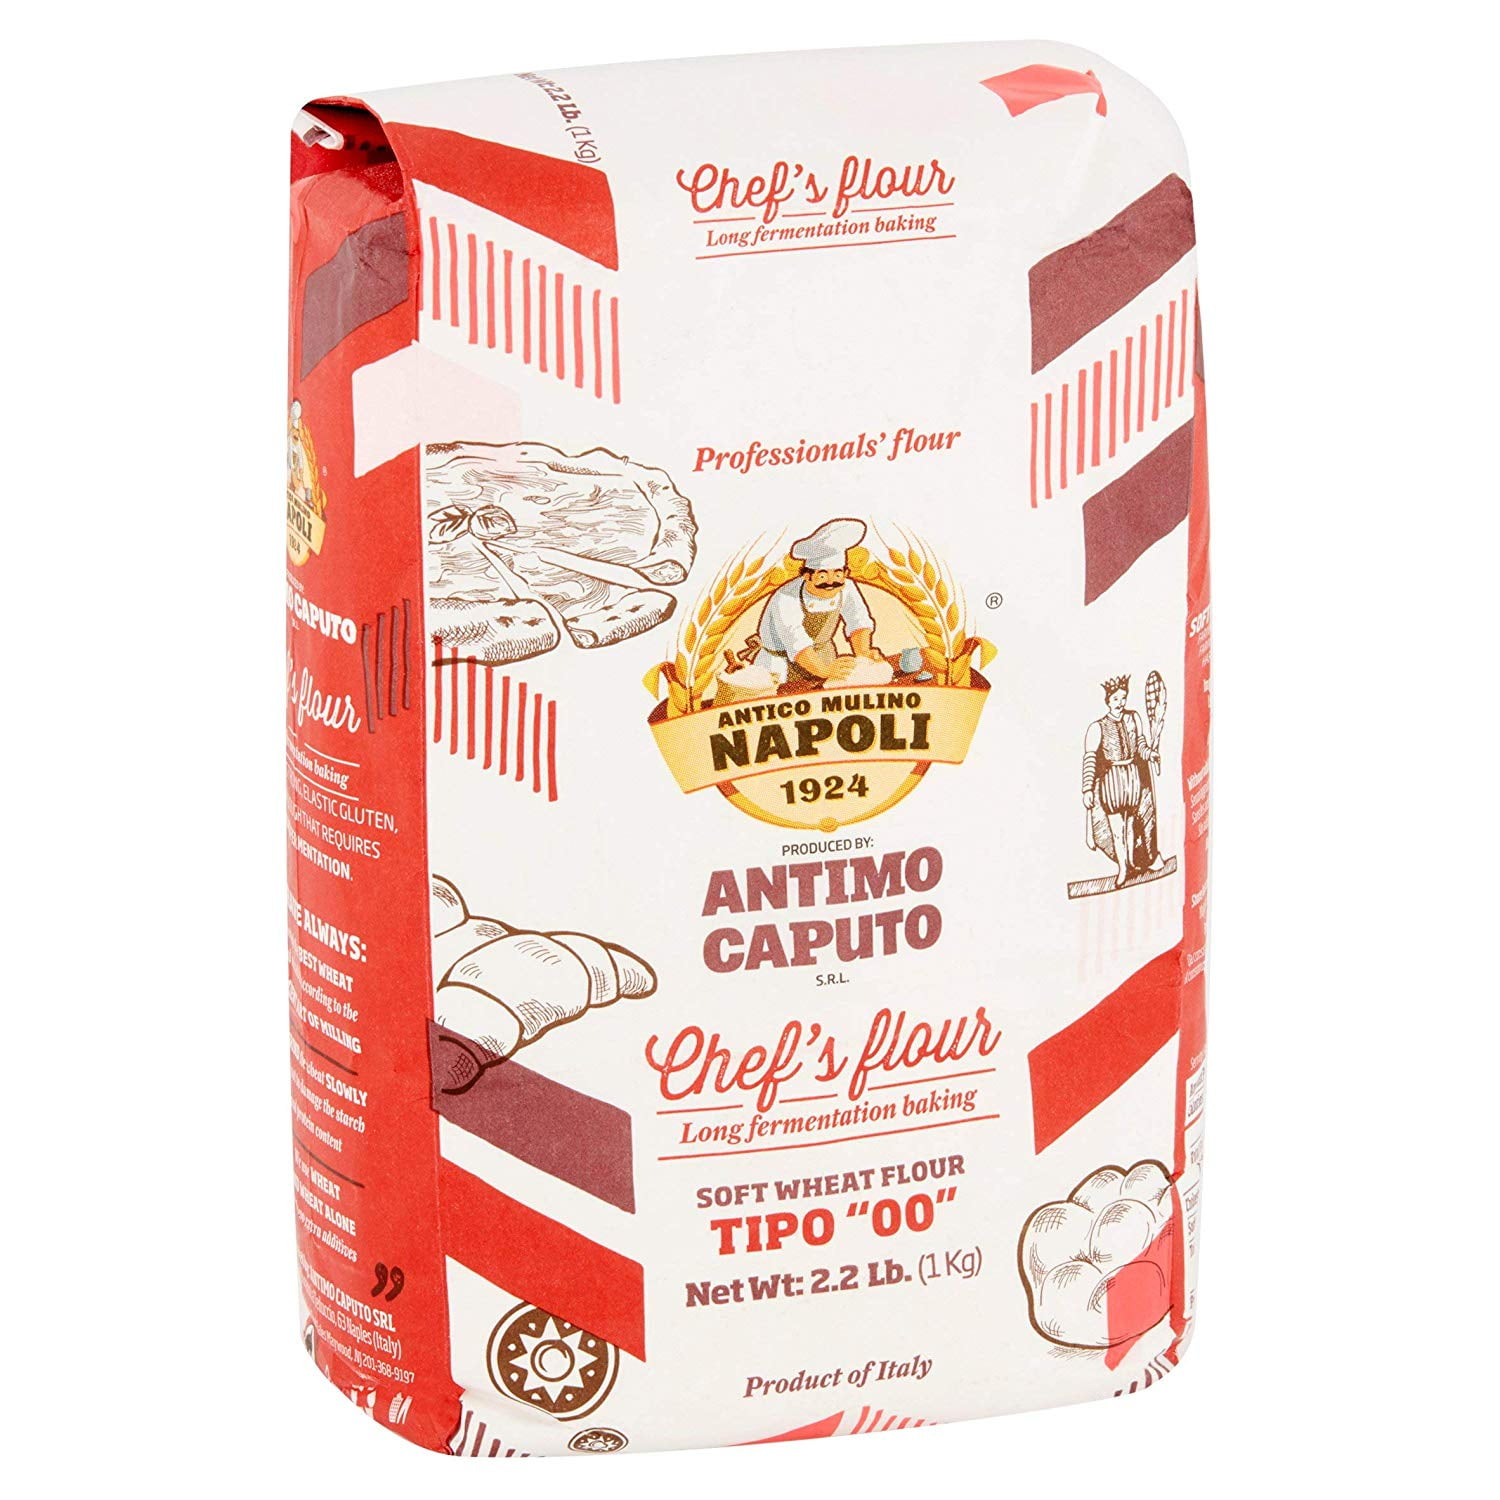 Antimo Caputo Chefs Flour 2.2 LB (Case of 10) - Italian Double Zero 00 - Soft Wheat for Pizza Dough, Bread, &amp; Pasta